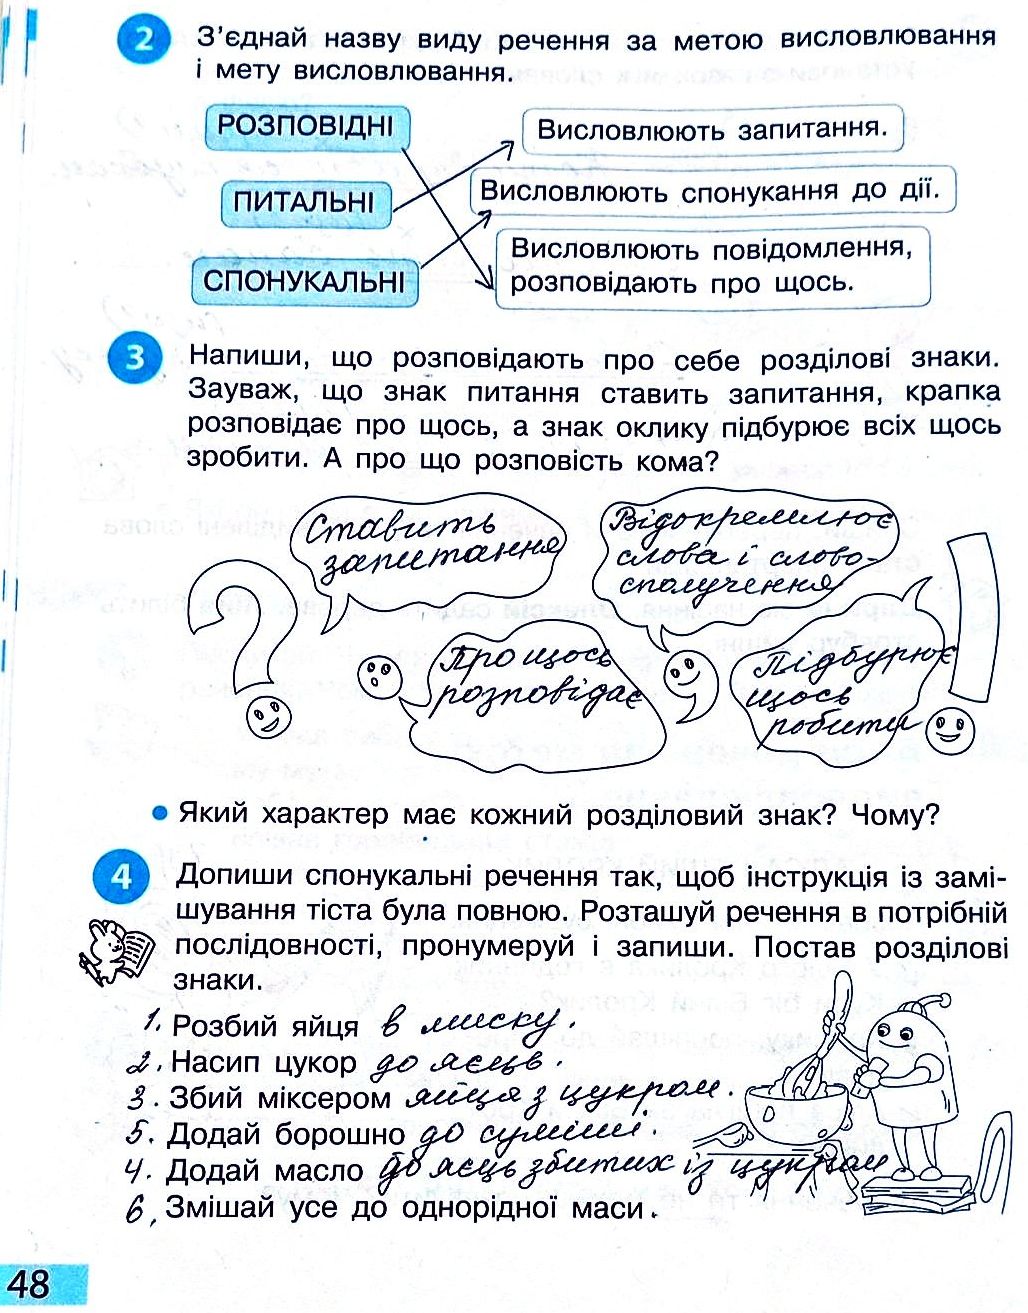 Сторінка 48 частина 2 гдз 3 клас робочий зошит українська мова Большакова